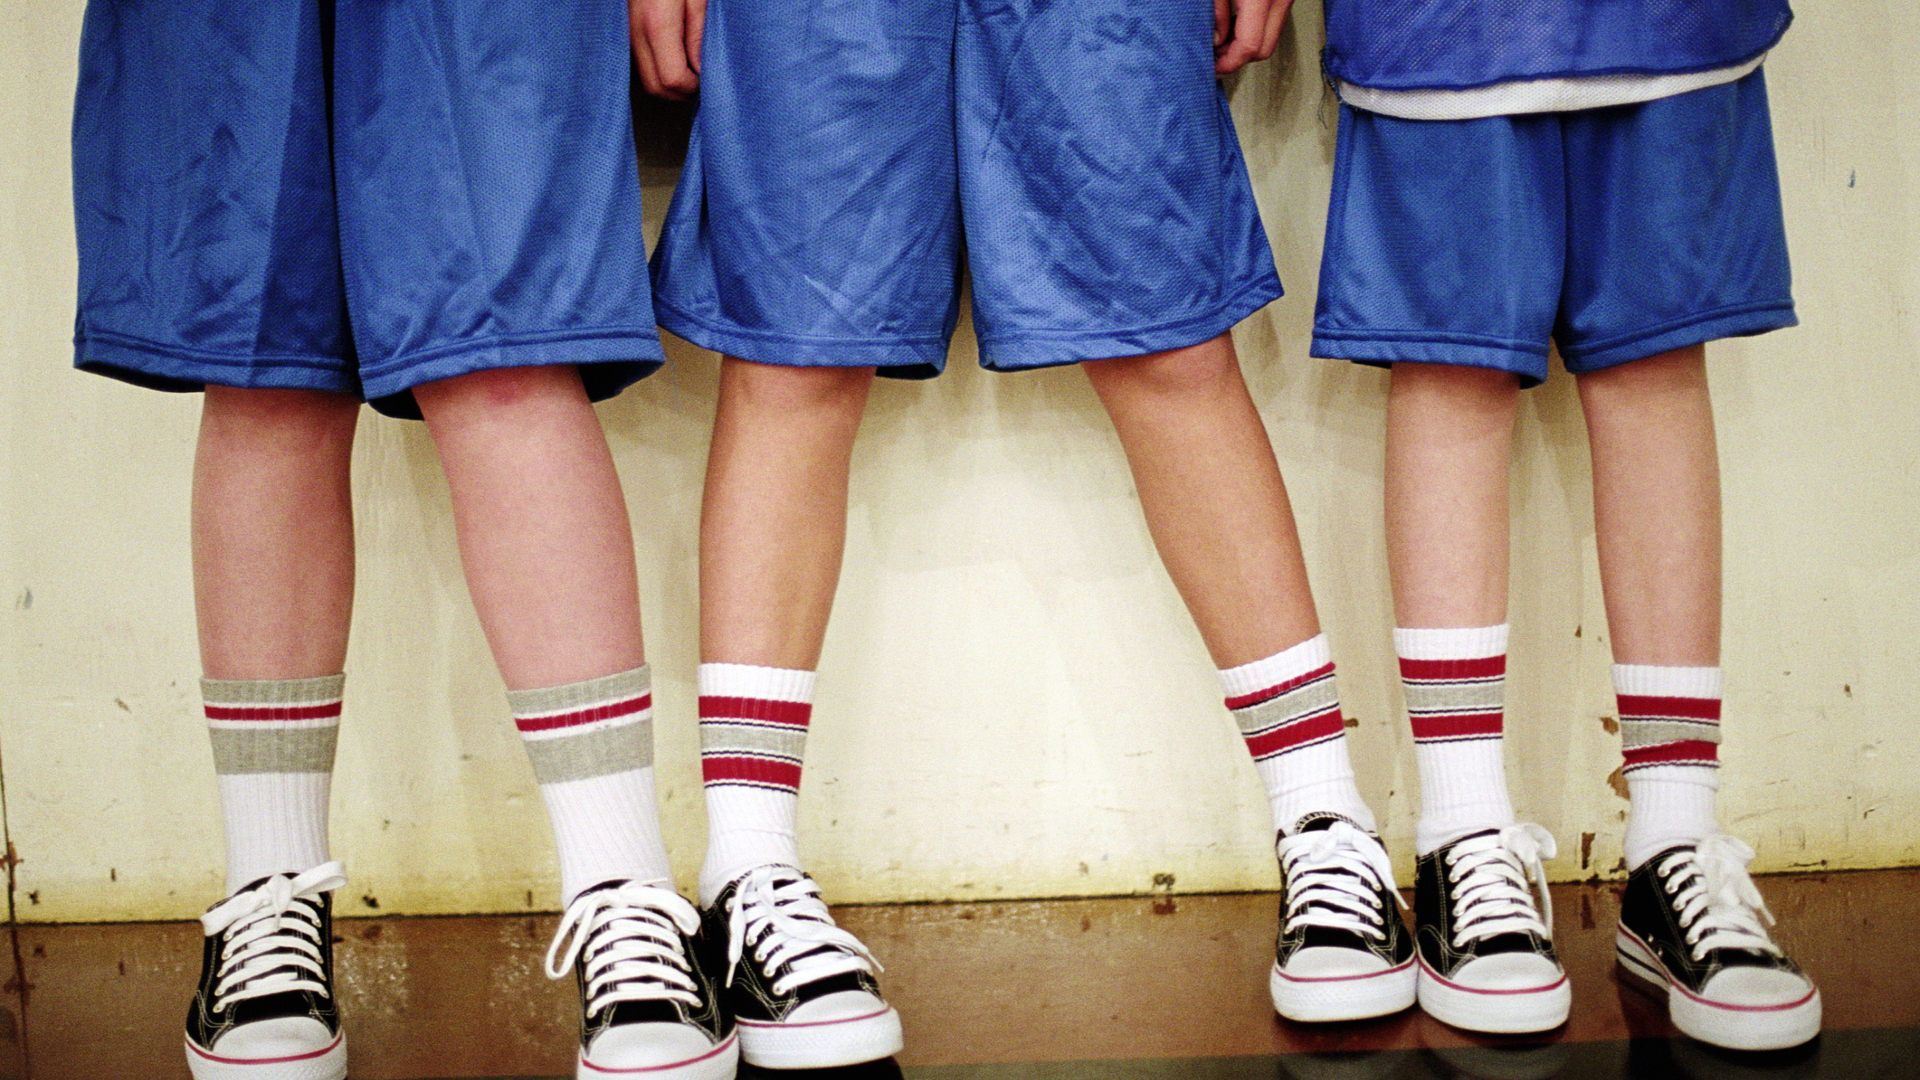 Ne hordjatok rövidnadrágot, nehogy megerőszakoljanak benneteket – mondták a lányoknak egy brit iskolában